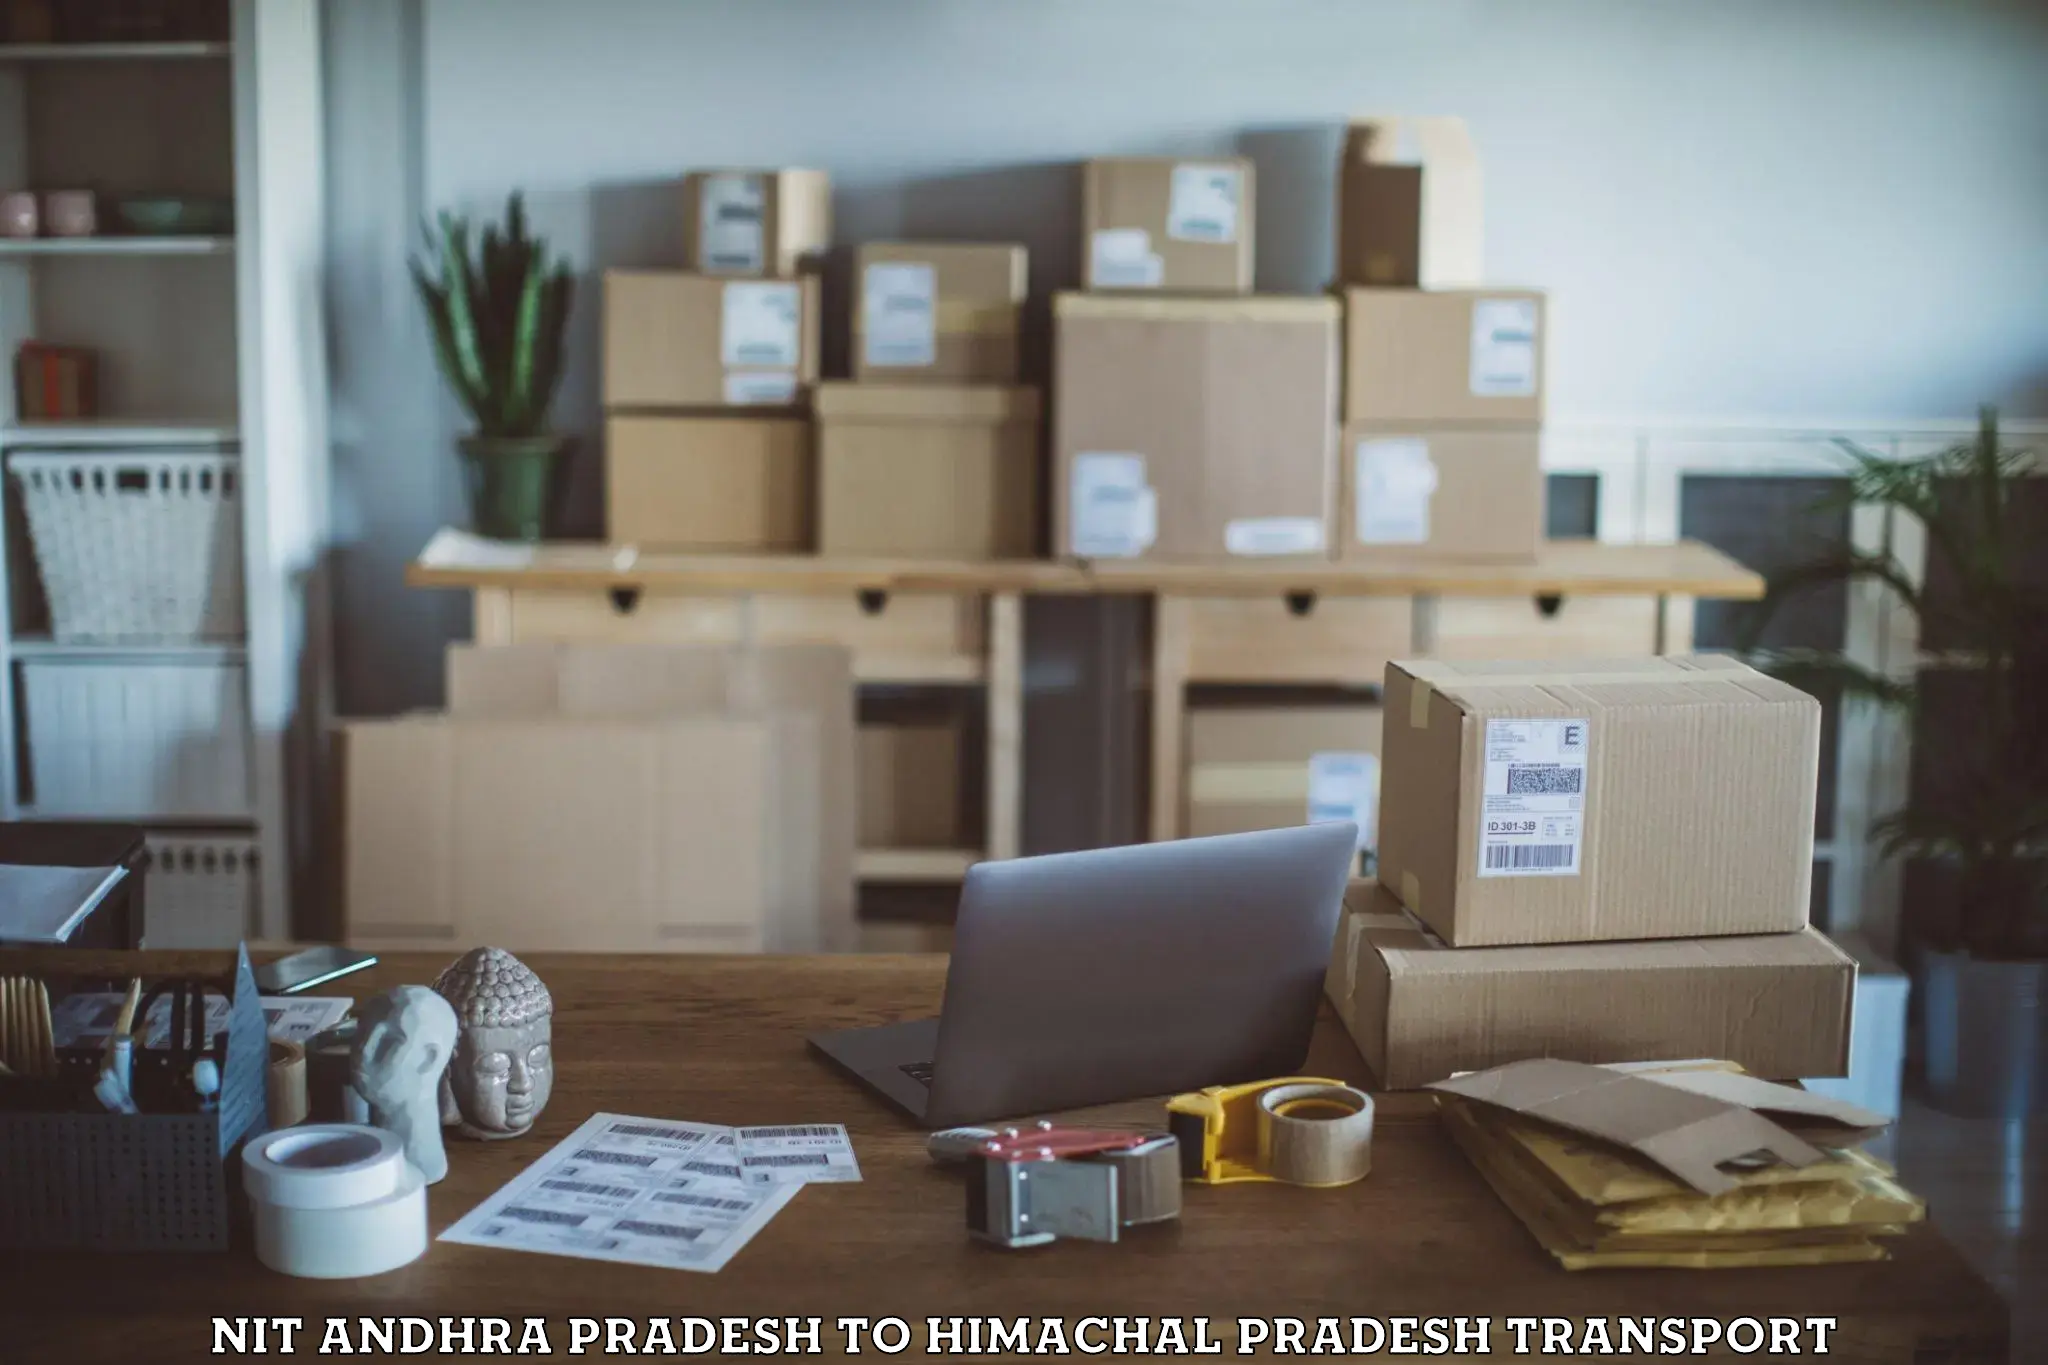 Furniture transport service NIT Andhra Pradesh to Himachal Pradesh